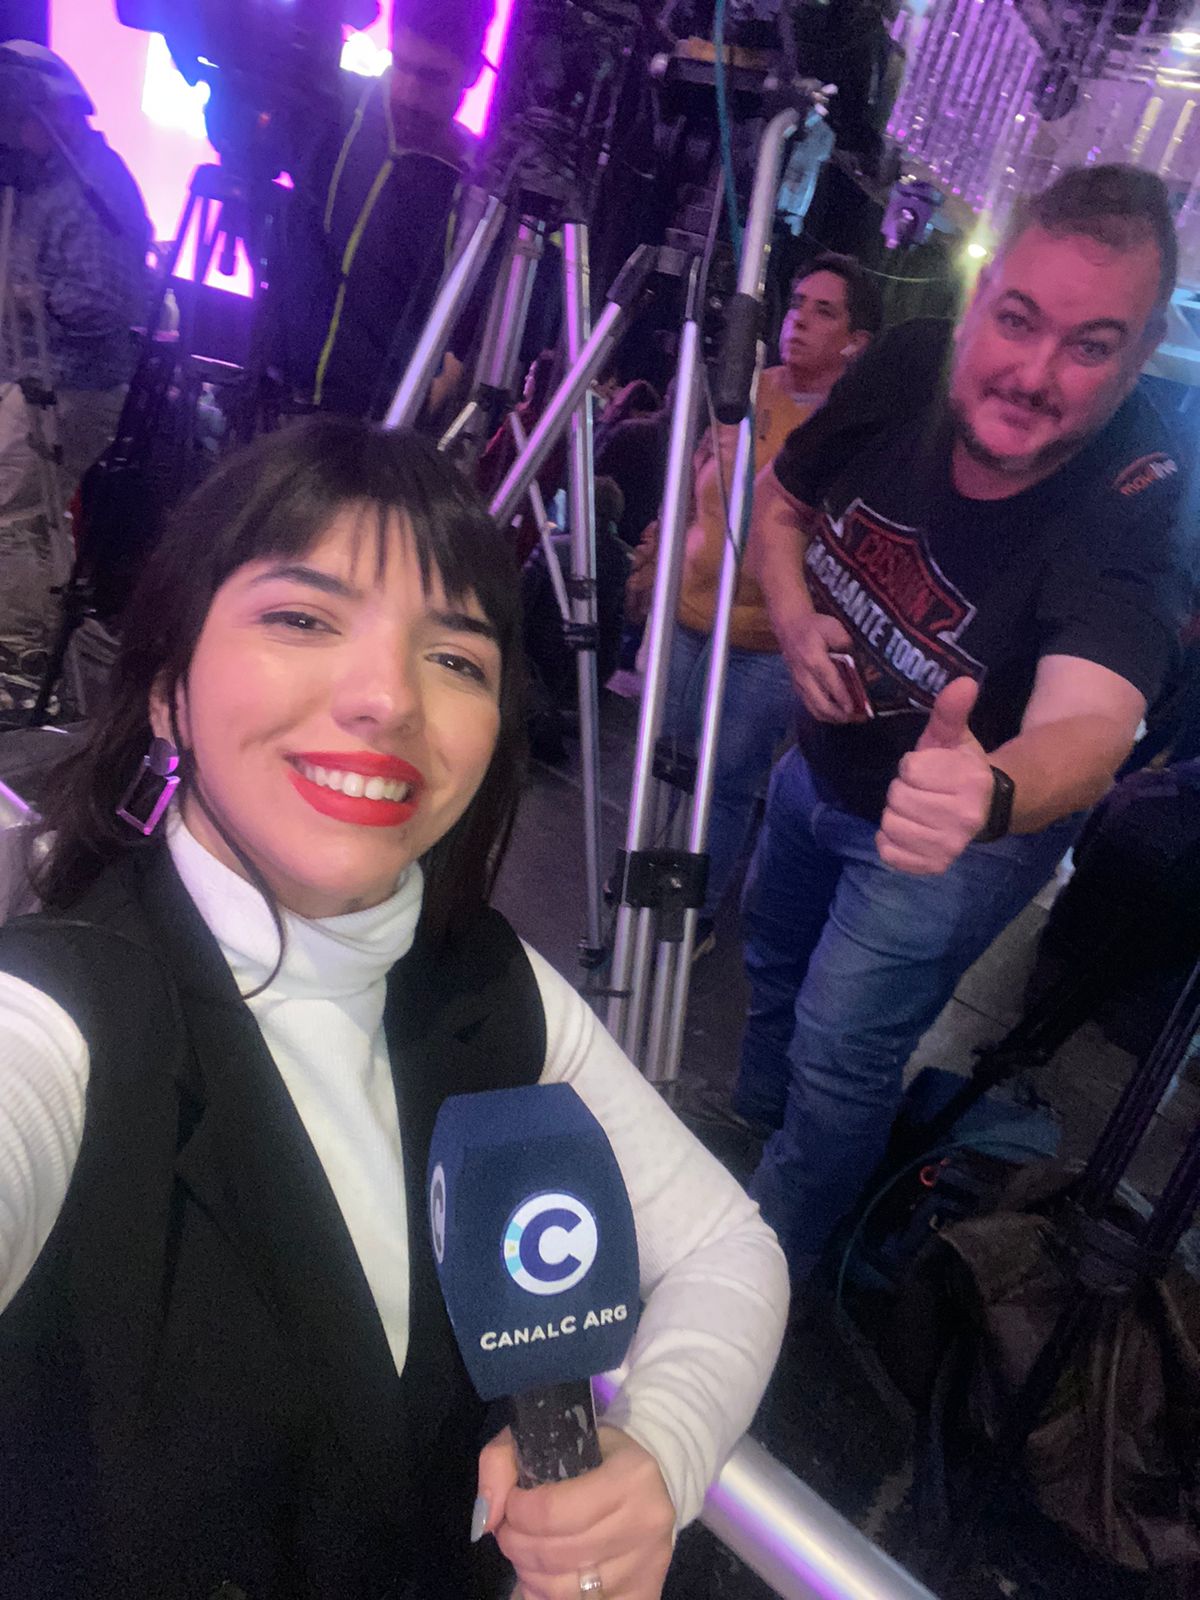 Canal C Argentina en un nuevo "Operativo Elecciones" histórico • Canal C